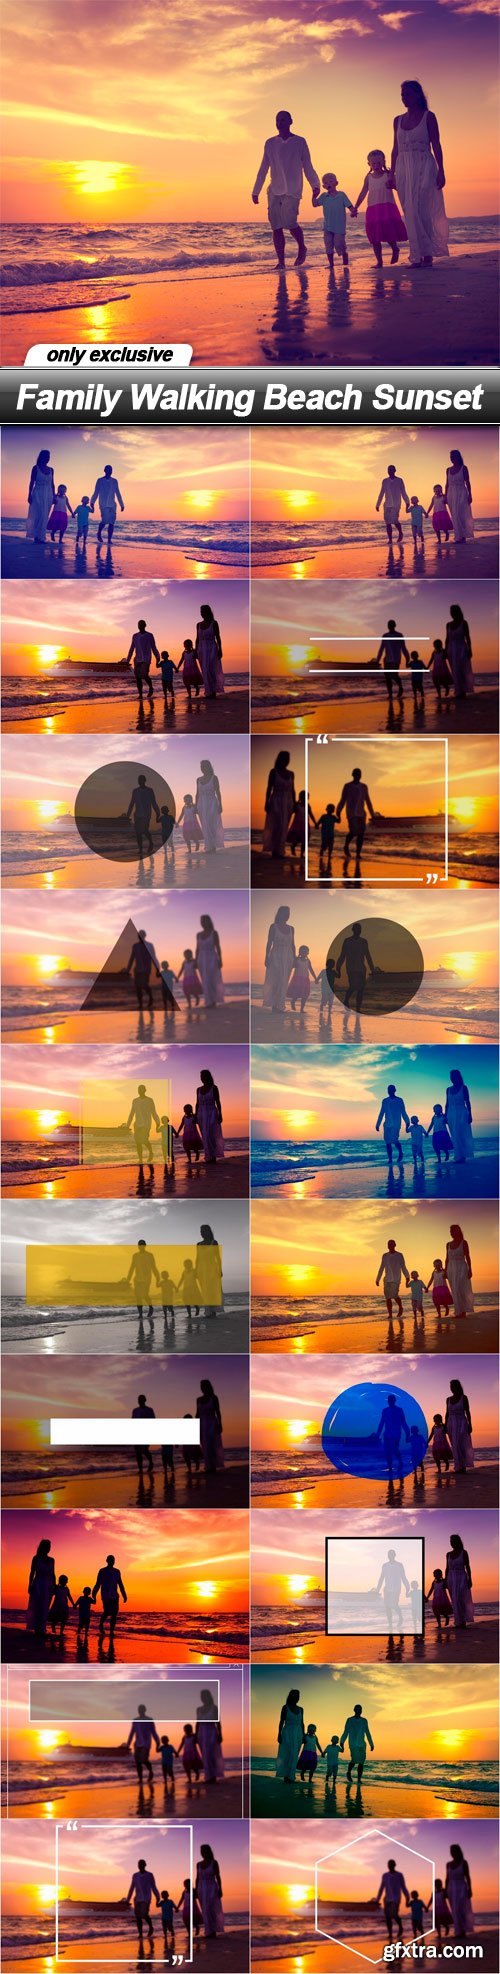 Family Walking Beach Sunset - 20 UHQ JPEG